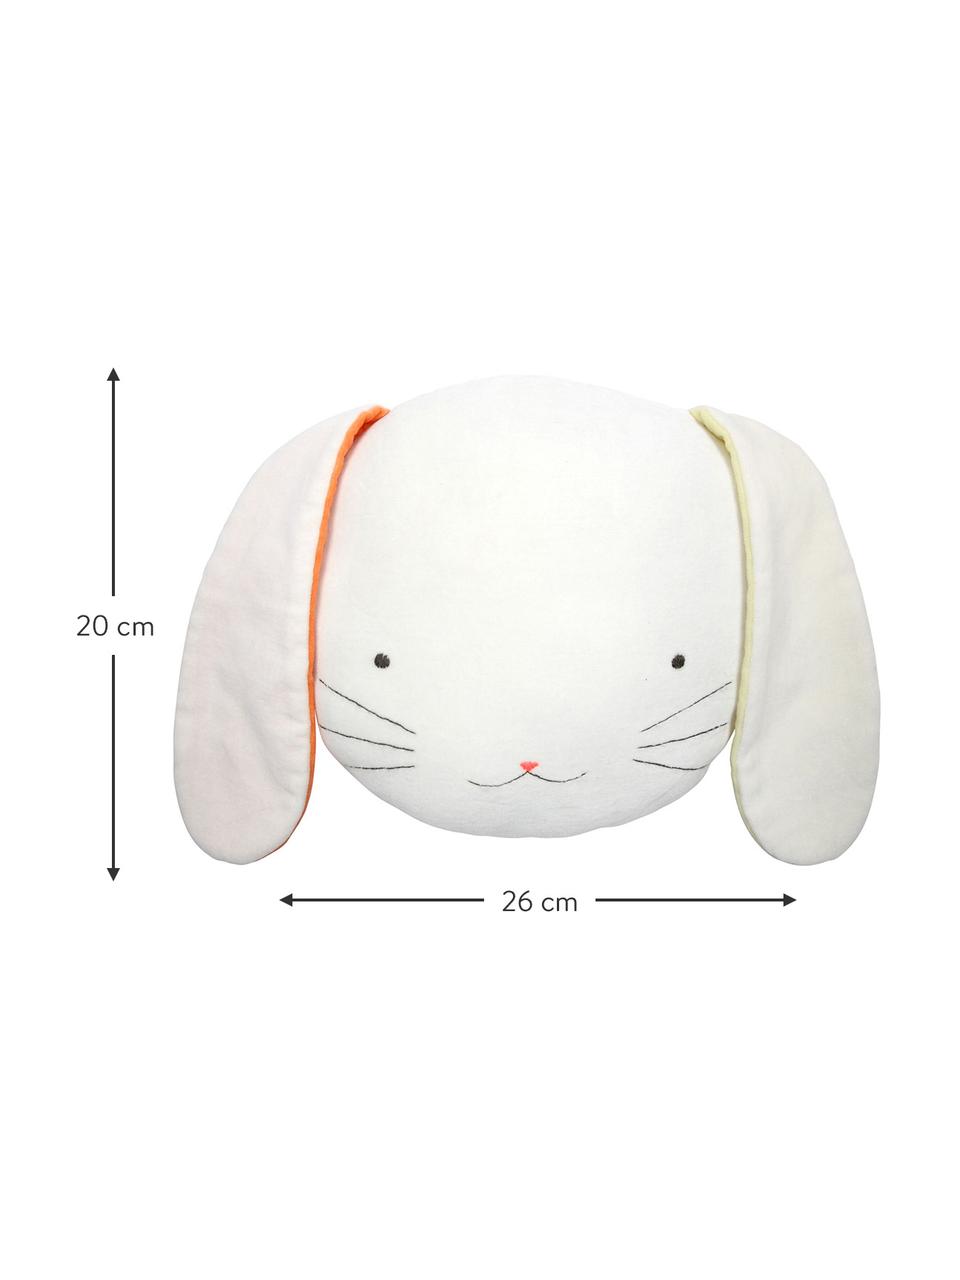 Kuschelkissen Bunny, Bezug: Baumwollsamt, Weiss, Gelb, Orange, Schwarz, 26 x 20 cm